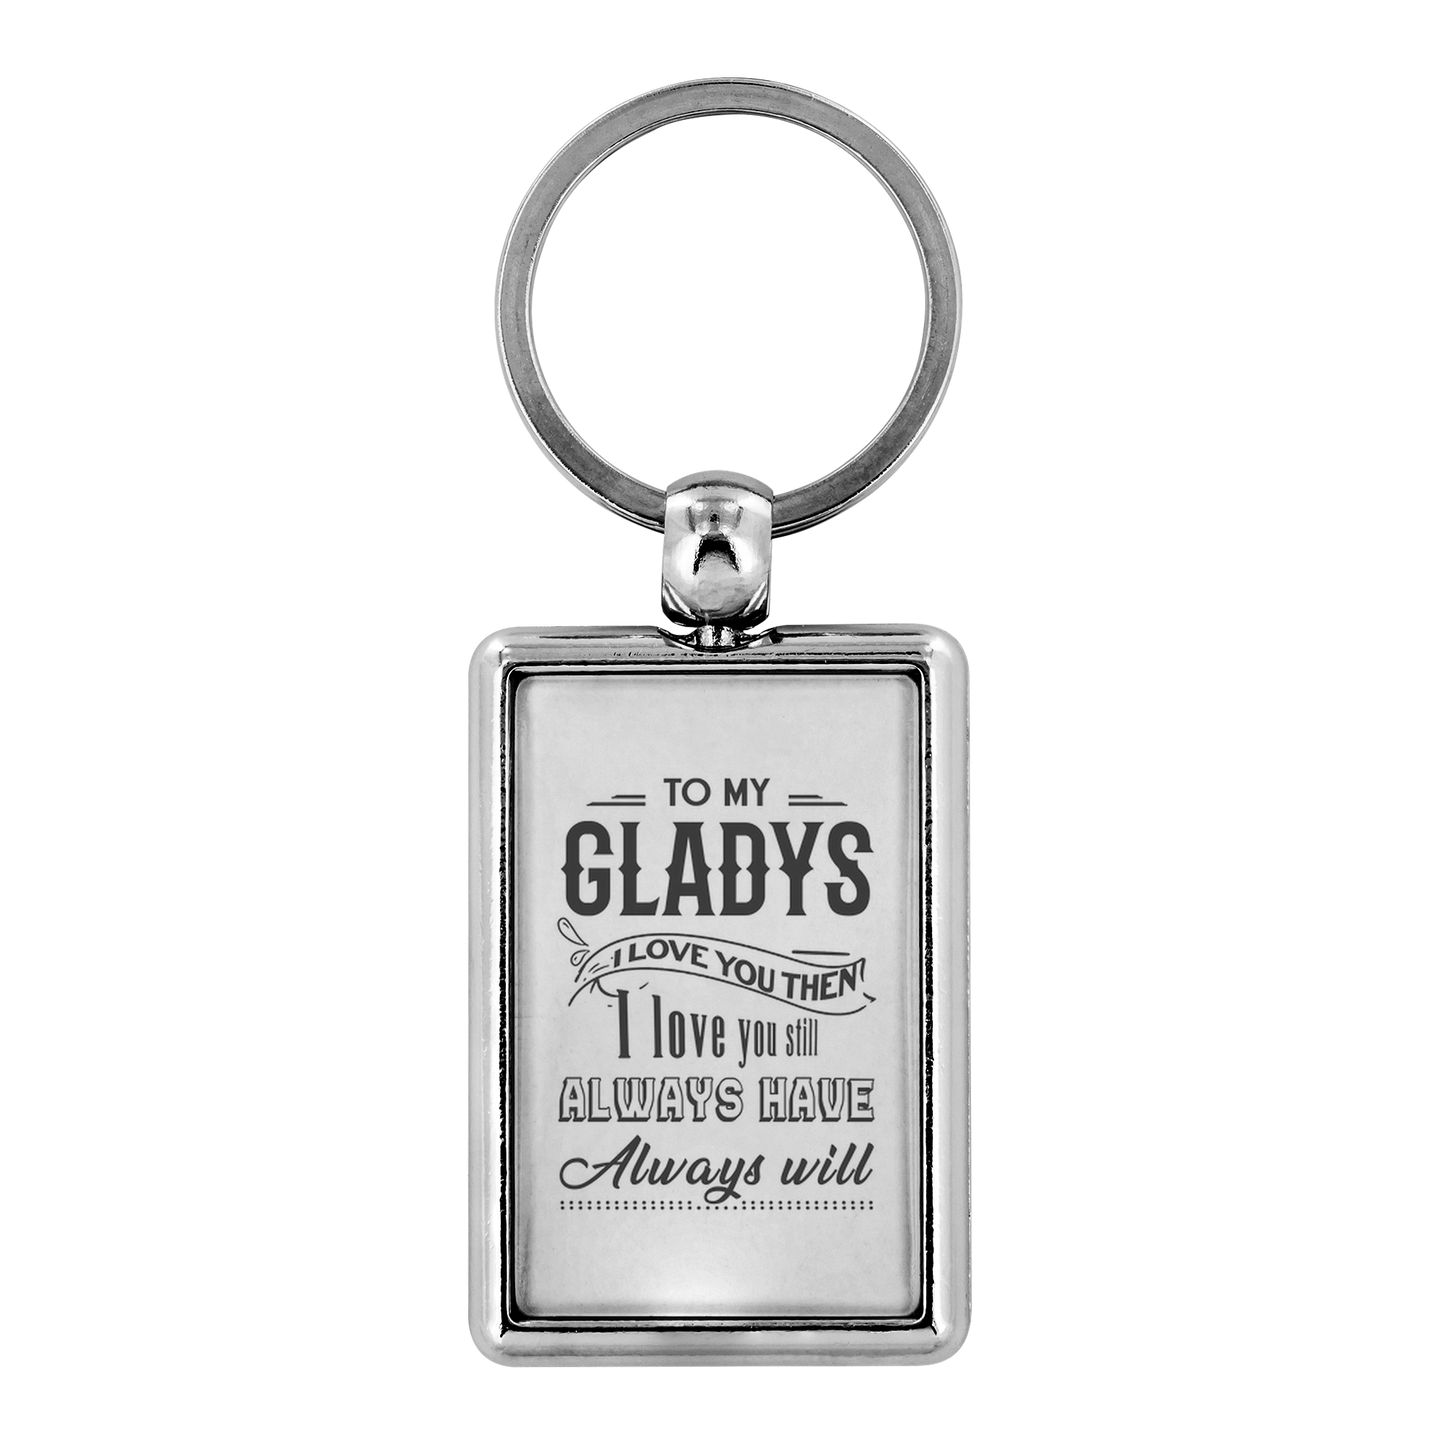 KC-21246371-sp-29915 - [ Gladys | 1 | 1 ] (TL_Keychain) Keychain For Boyfriend With Name Gladys - To My Gladys I Lov